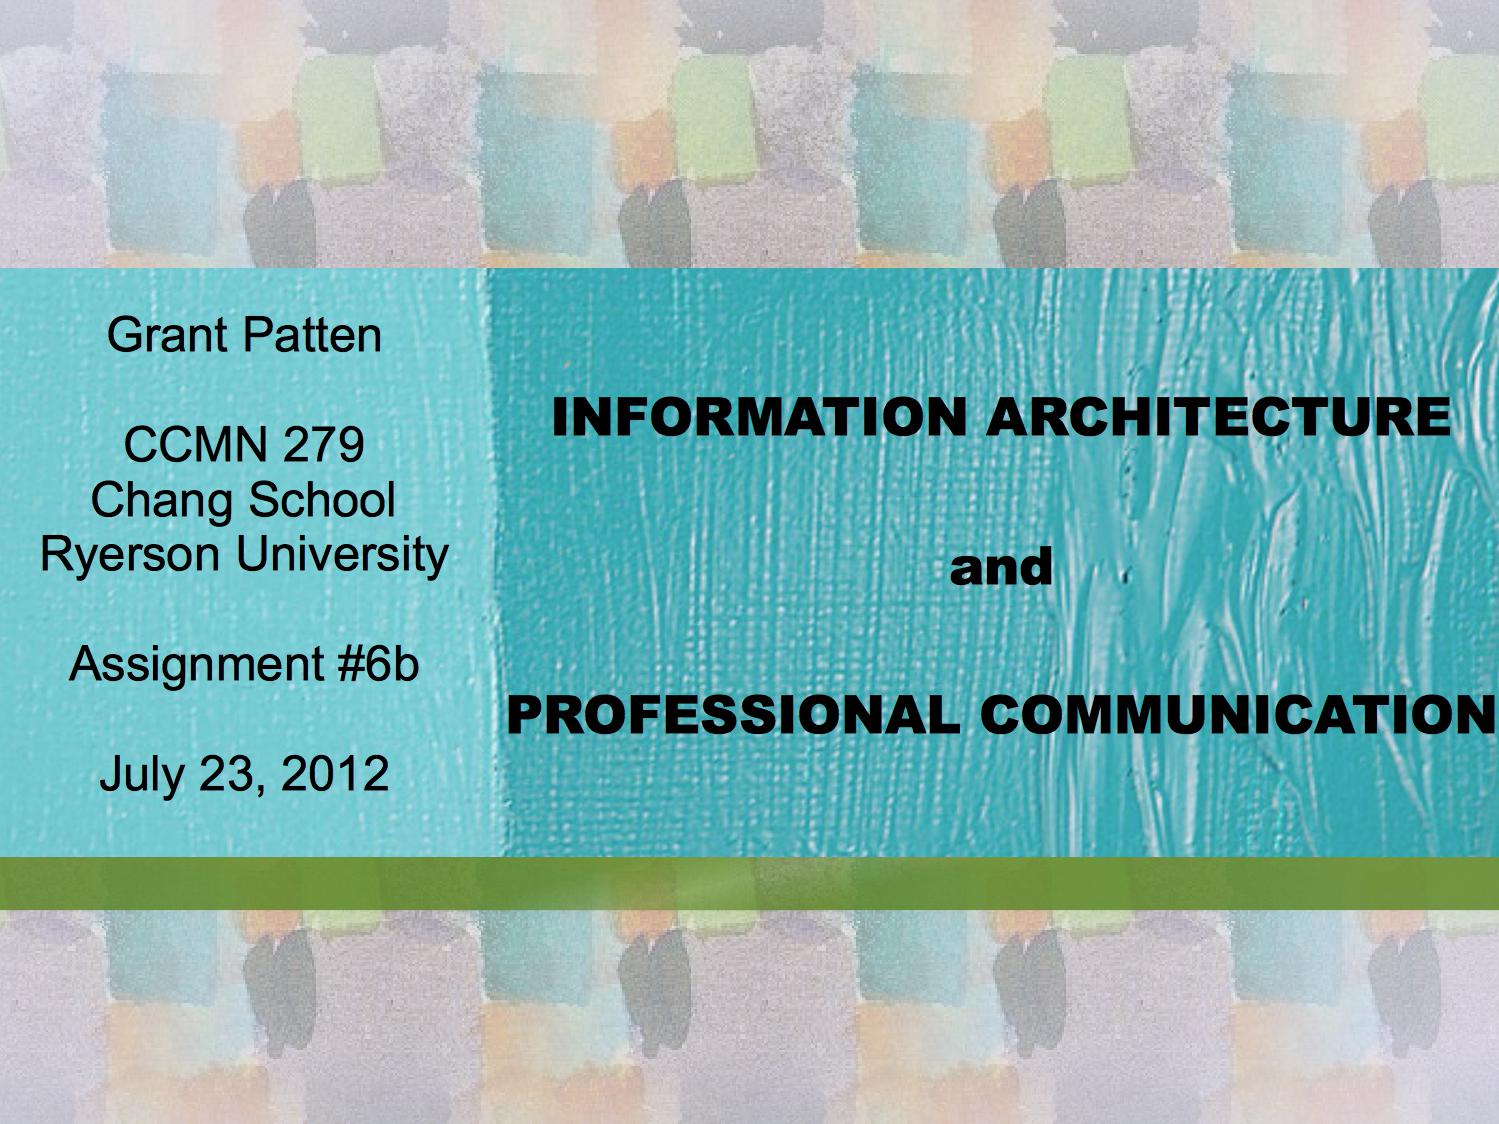 Information architecture presentation